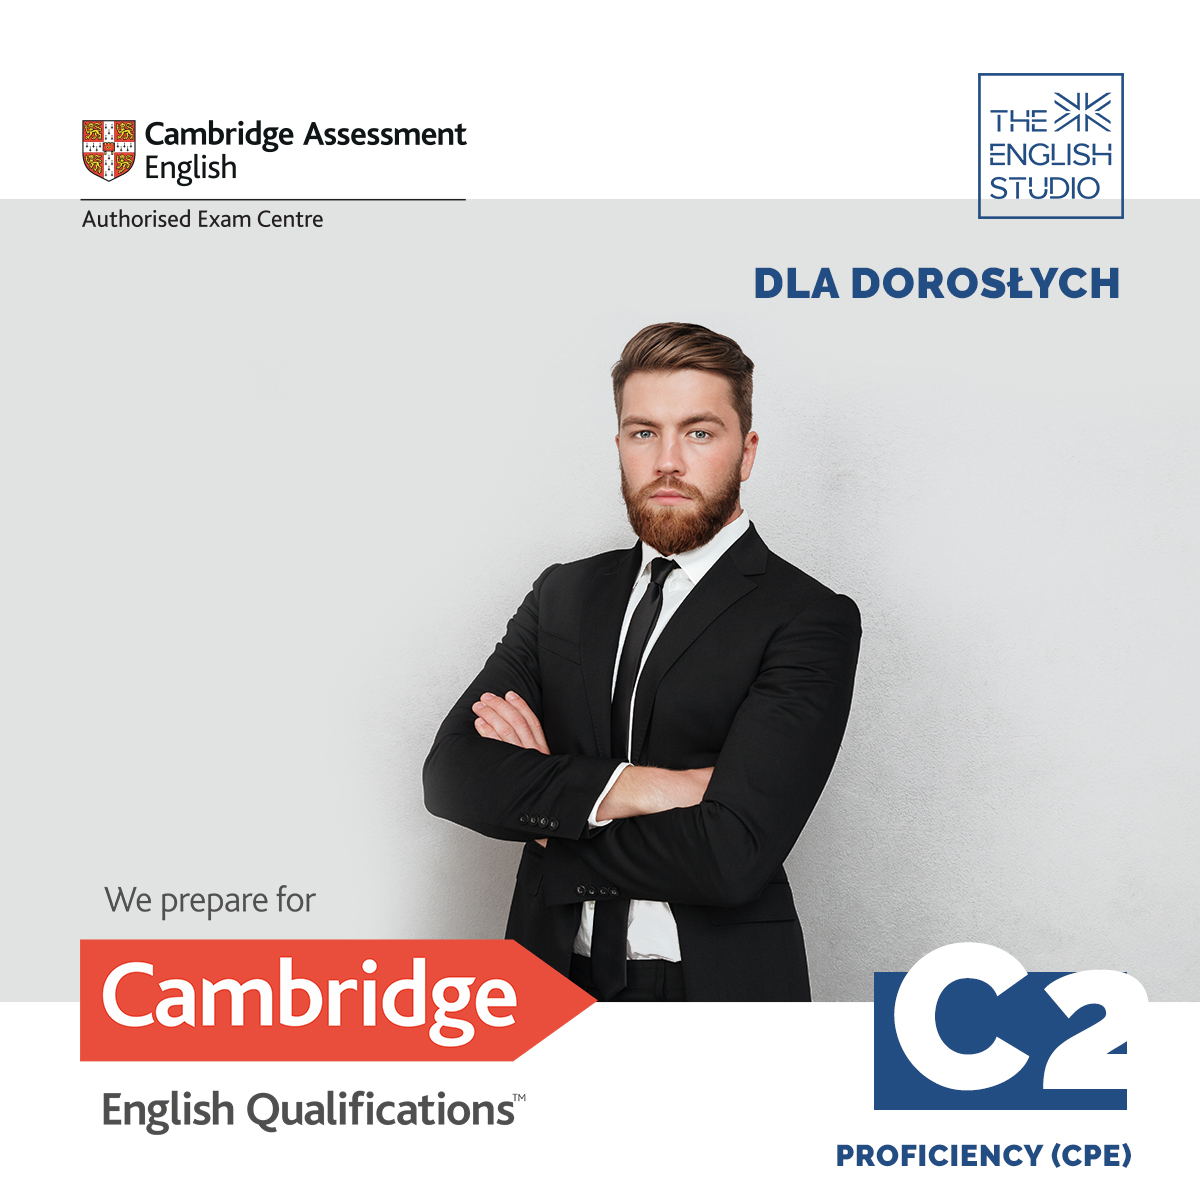 Egzamin Cambridge A2 | THE ENGLISH STUDIO - Szkoła języka angielskiego Świdwin